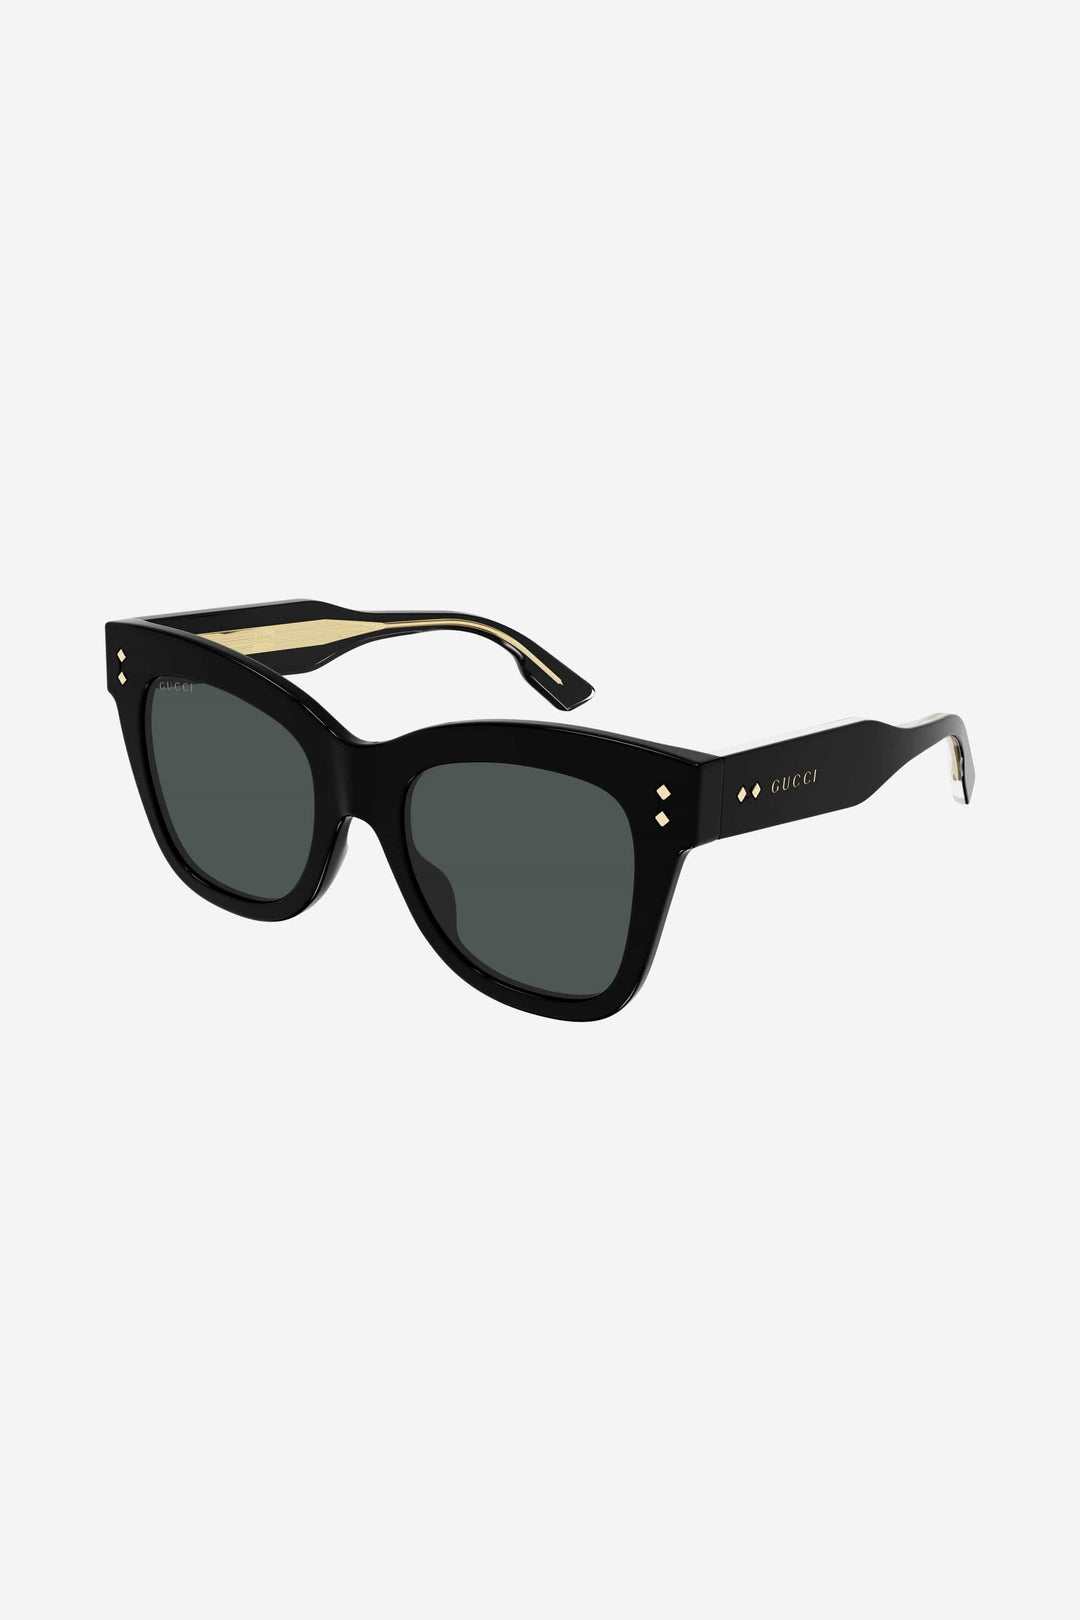 Gucci cat-eye style black sunglasses - Eyewear Club